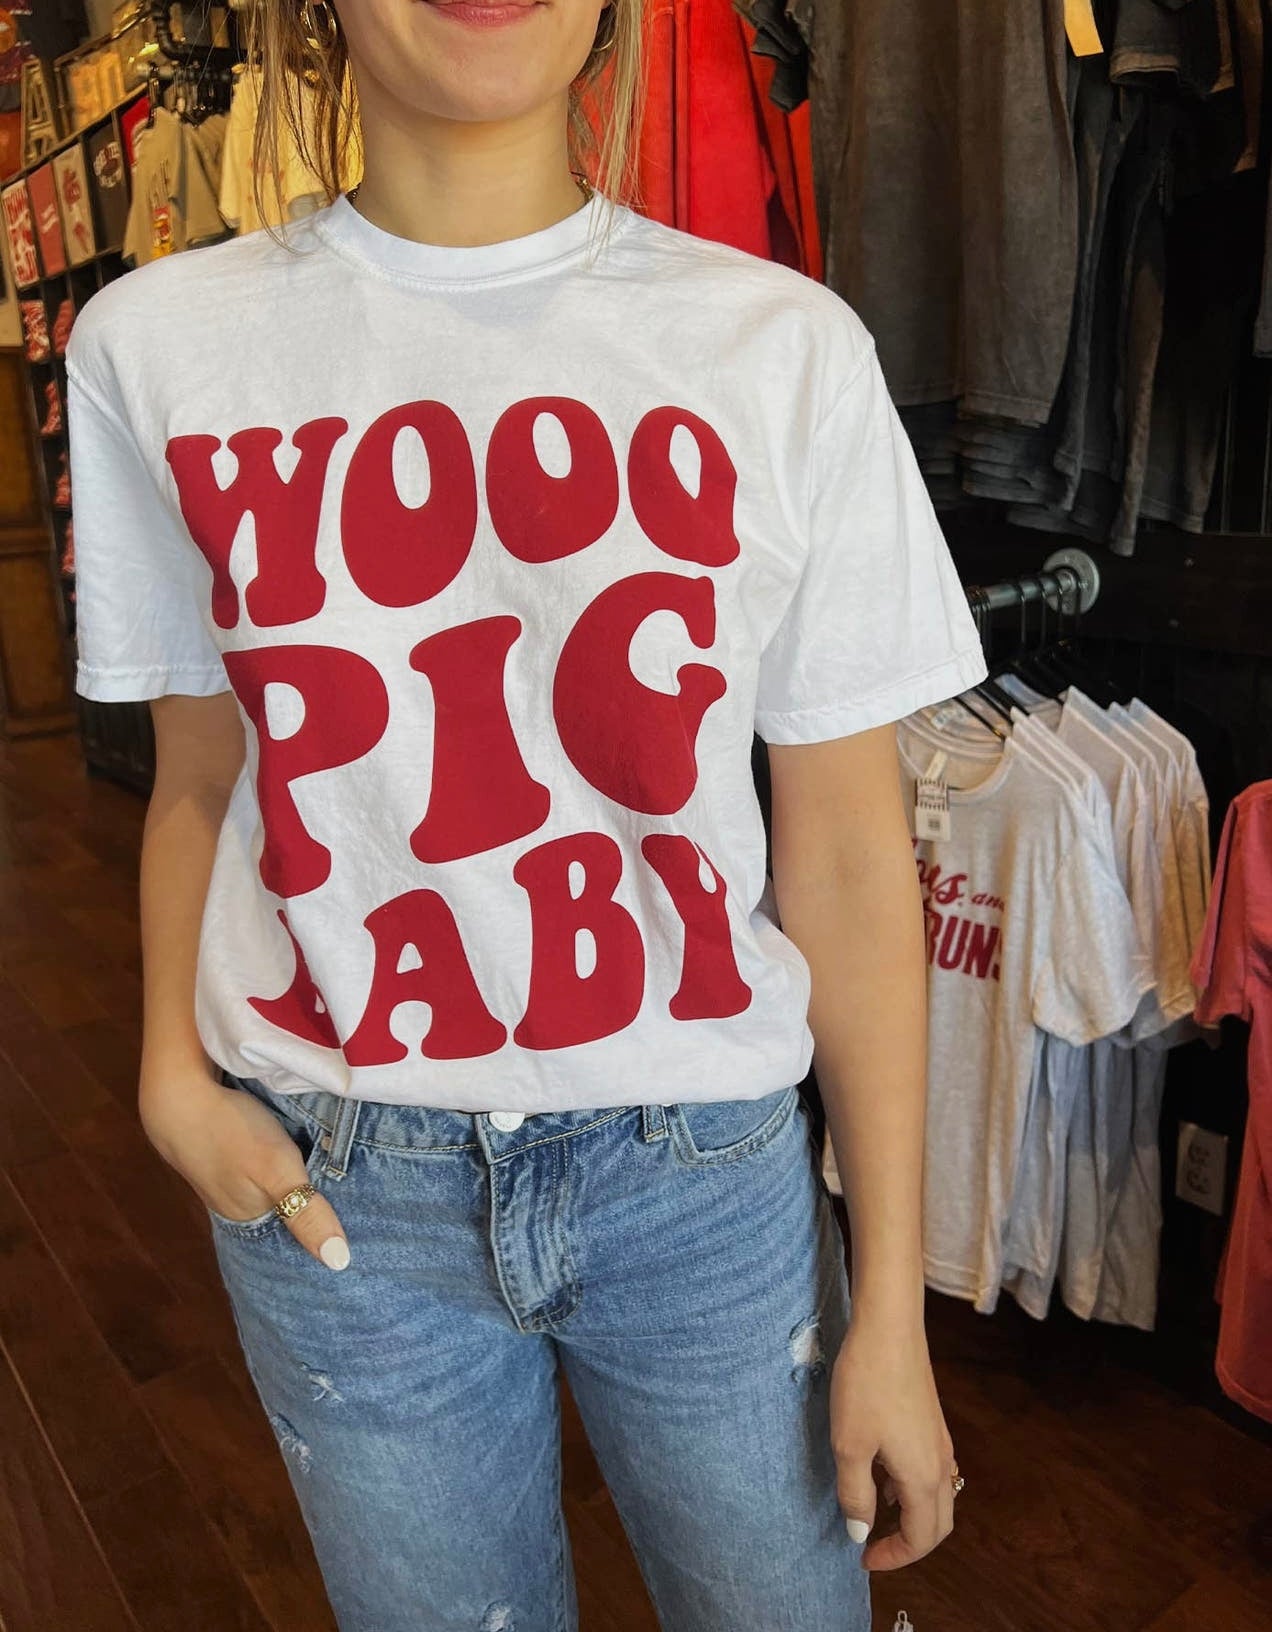 Wooo Baby T-shirt